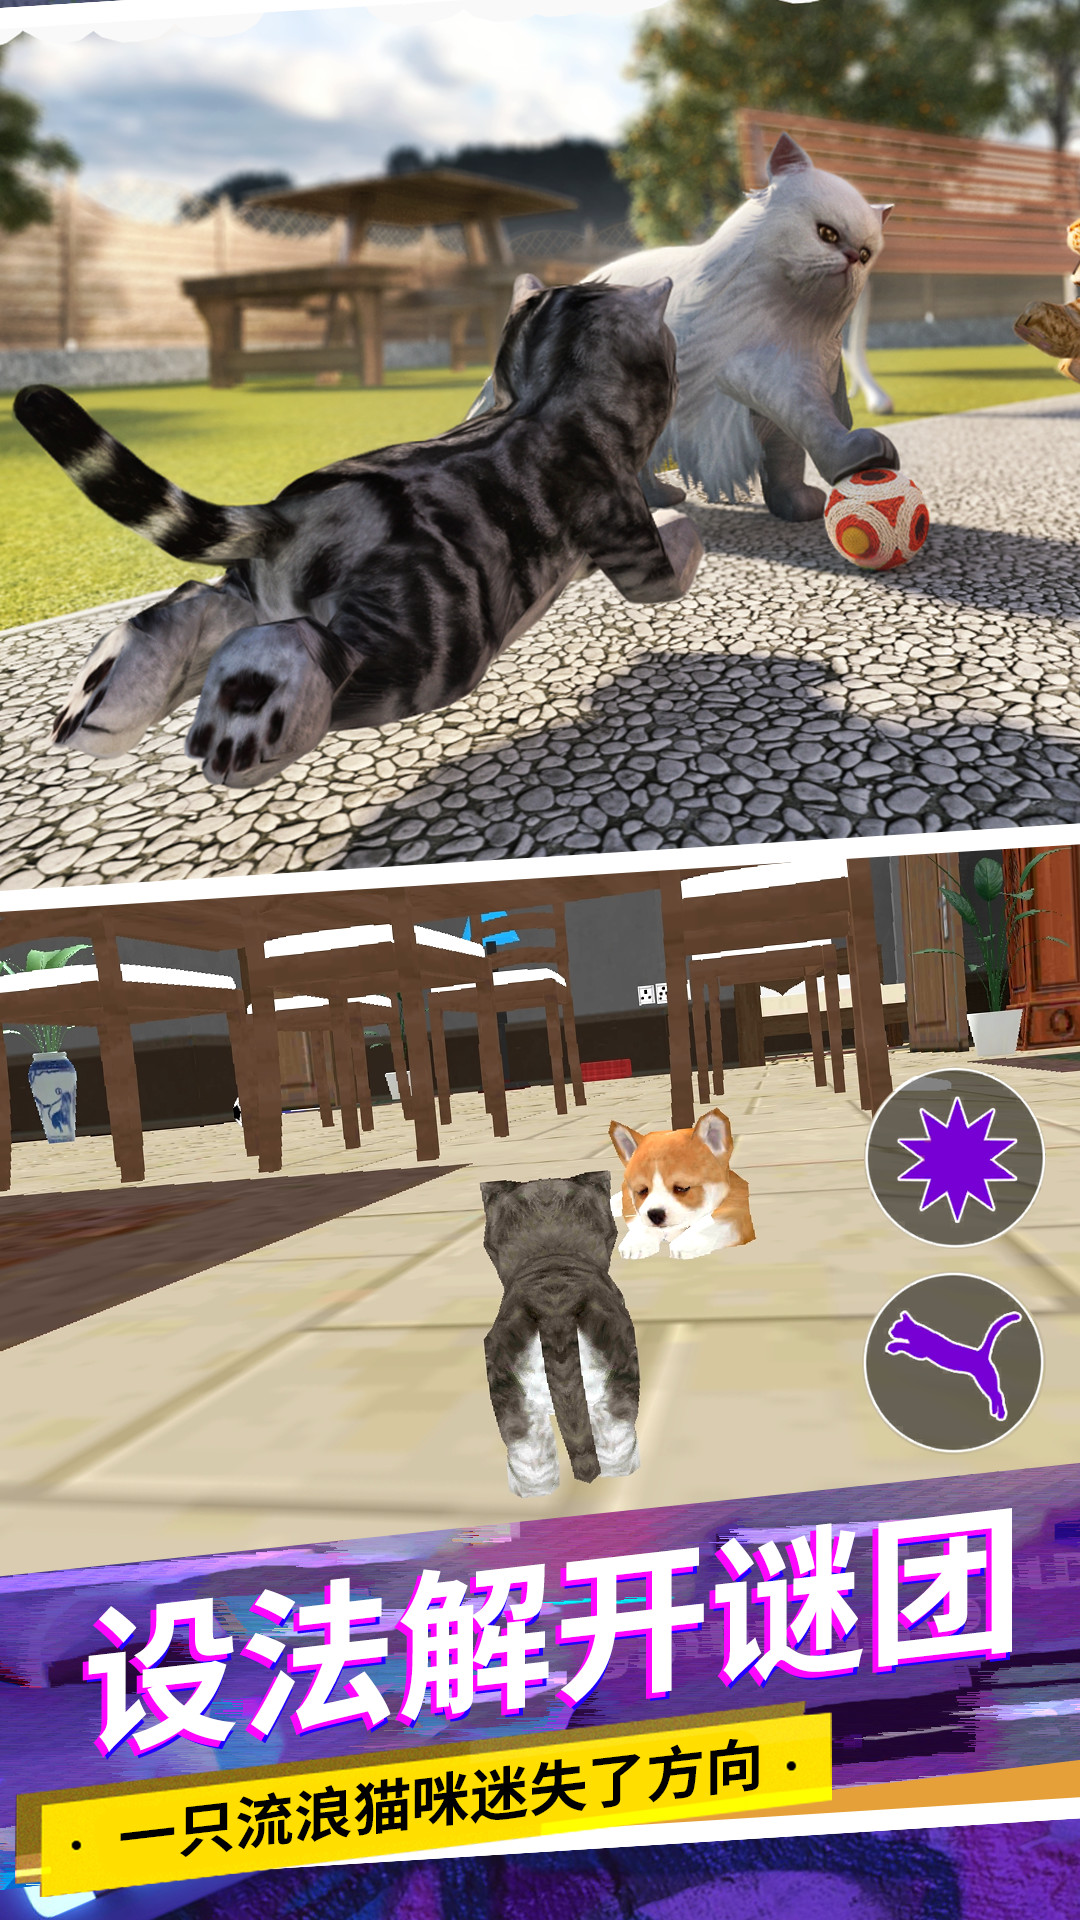 猫咪城市模拟游戏官方手机版图片1